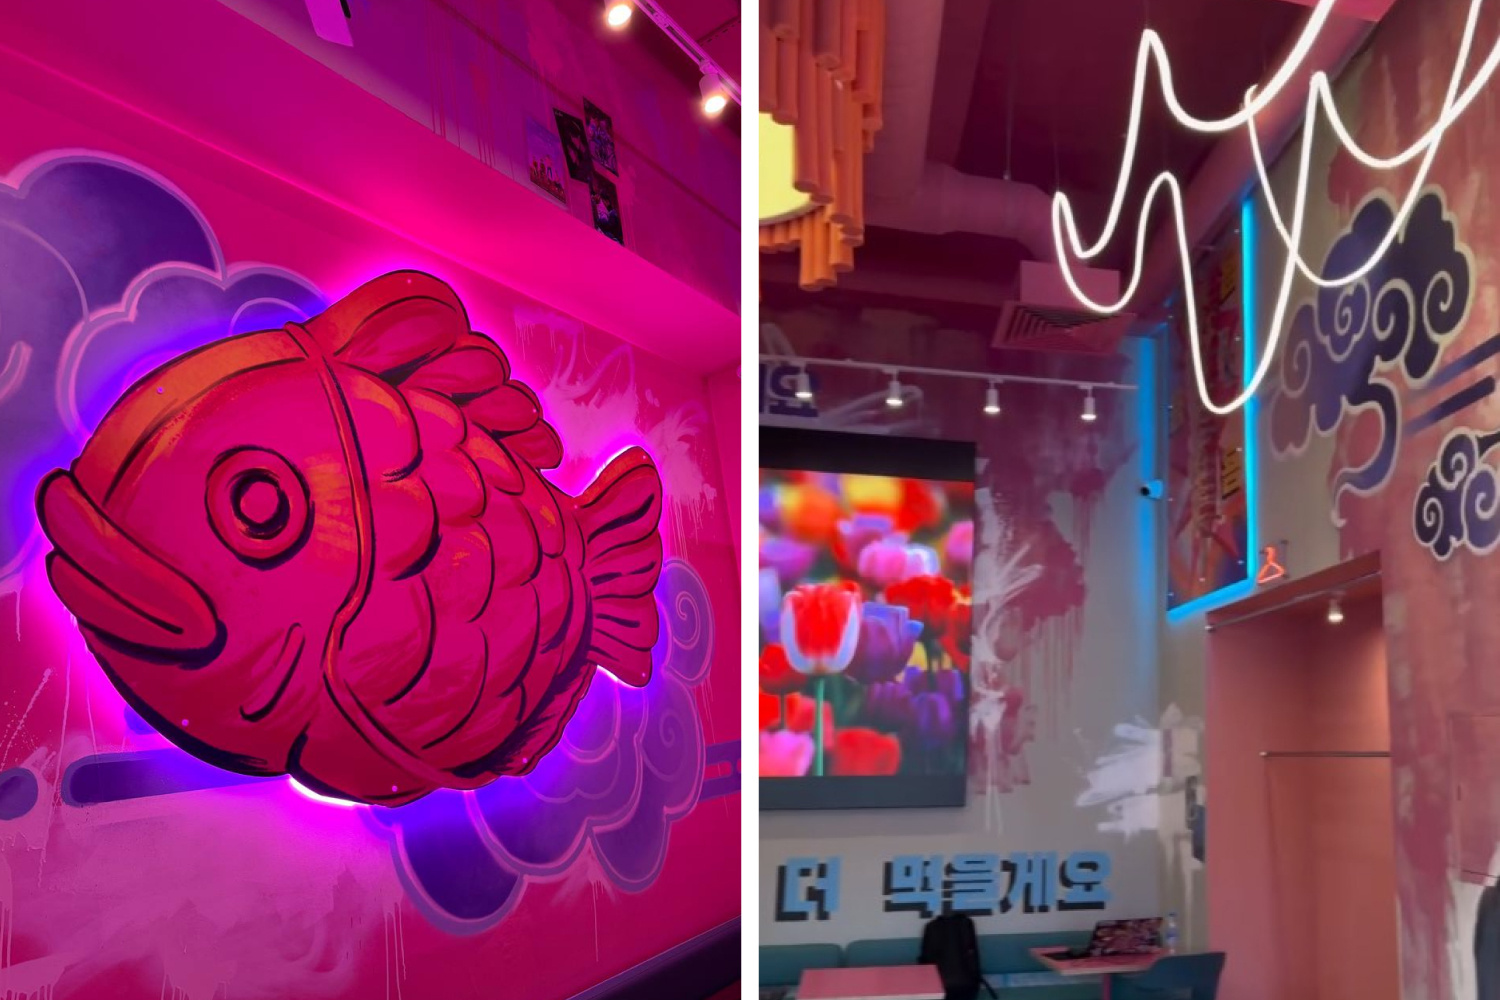 В центре Омска откроется корейский стритфуд с неоновым дизайном